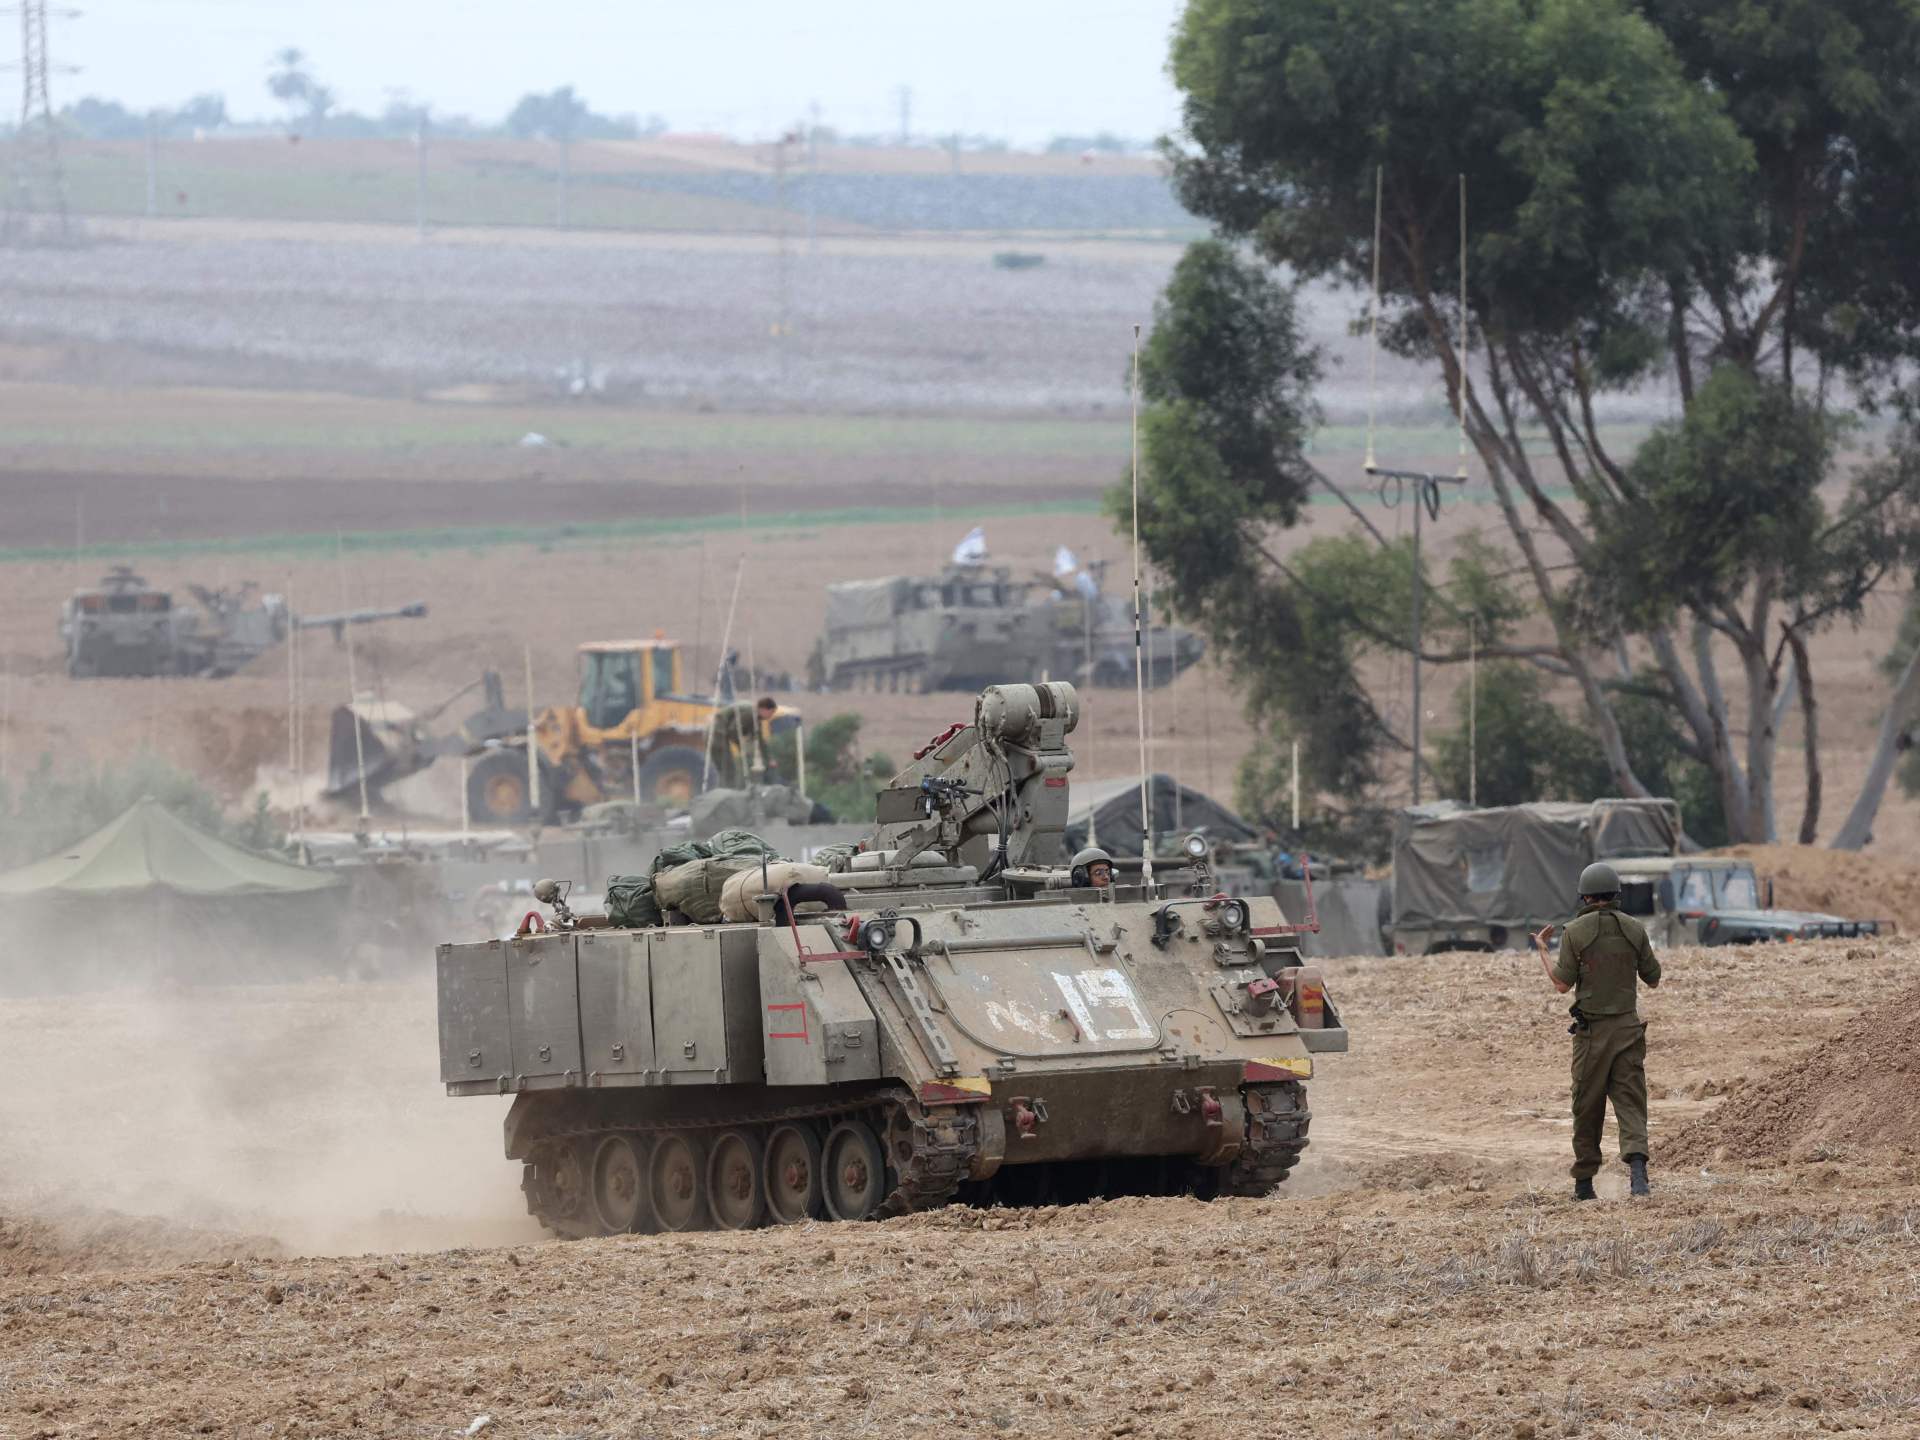 الجيش الإسرائيلي: الحرب ستستمر أسابيع طويلة وتنتظرنا أيام صعبة | أخبار – البوكس نيوز